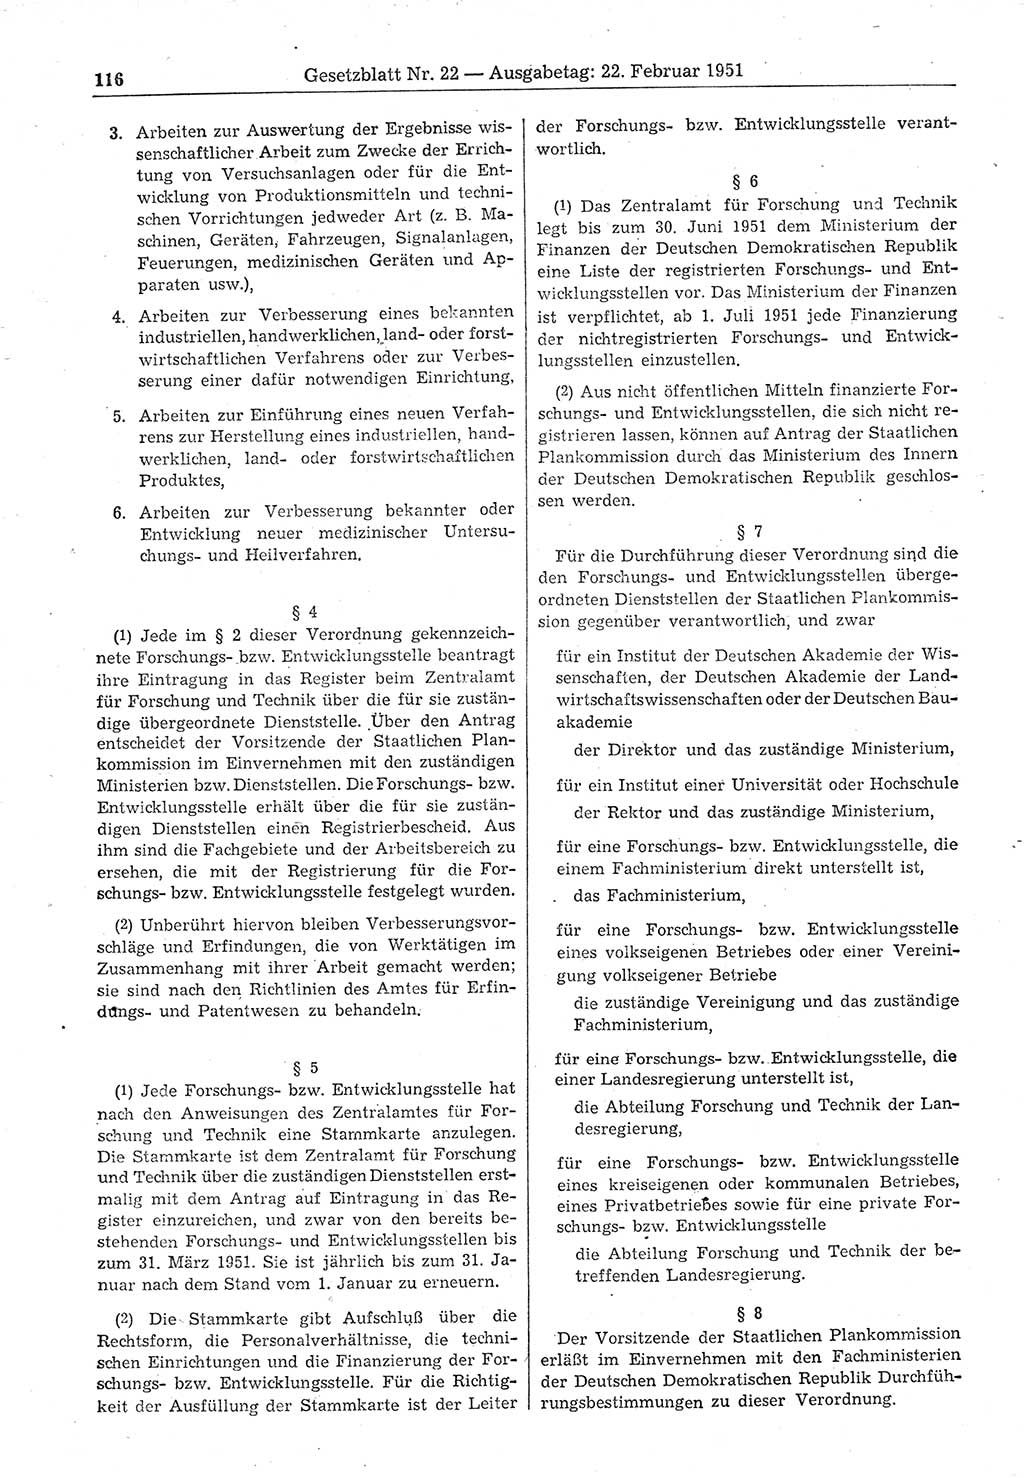 Gesetzblatt (GBl.) der Deutschen Demokratischen Republik (DDR) 1951, Seite 116 (GBl. DDR 1951, S. 116)